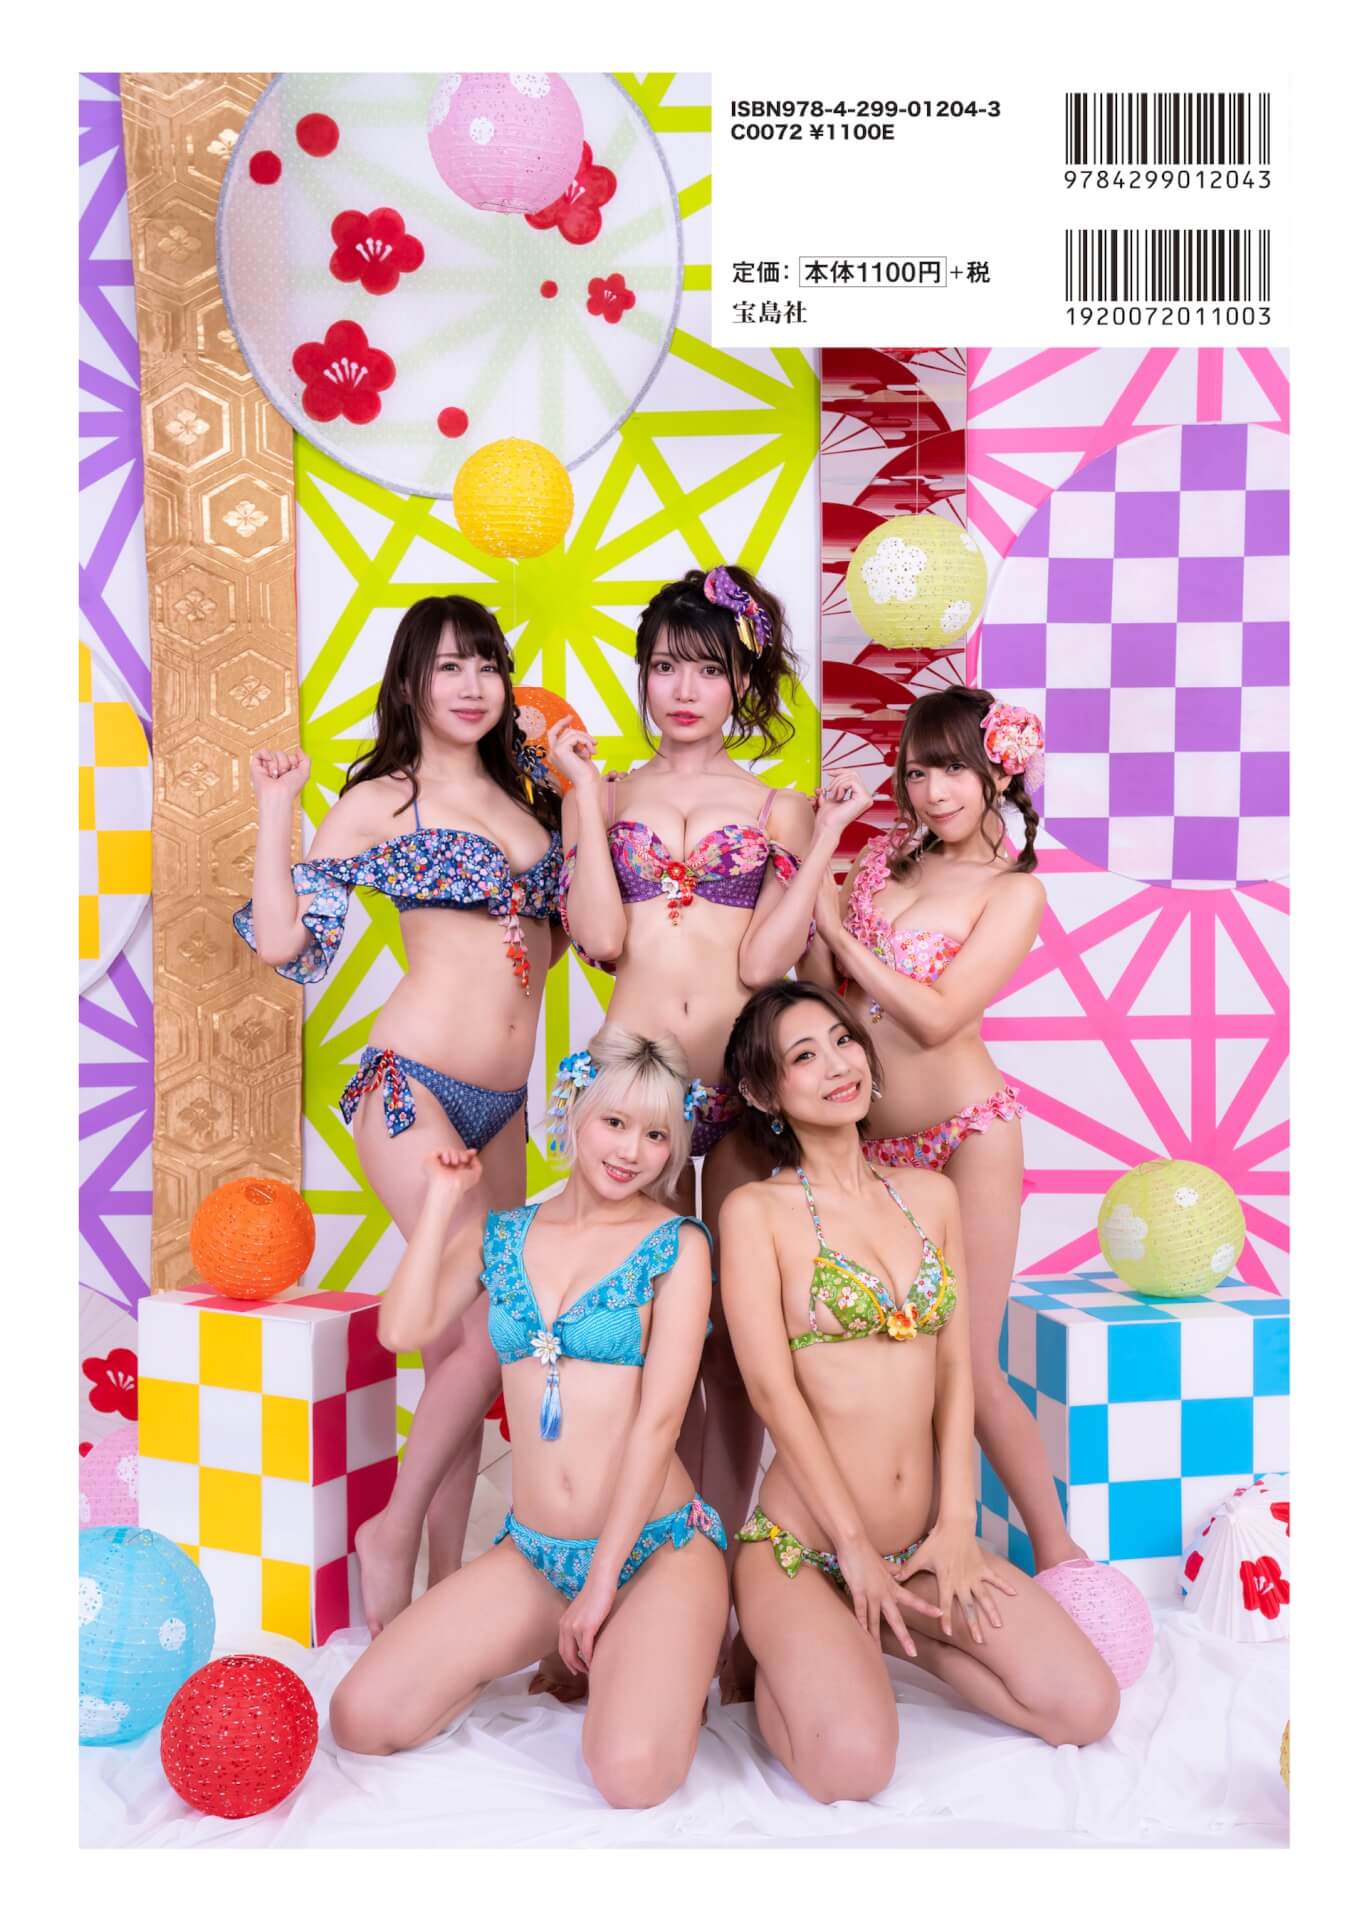 えなこ、似鳥沙也加、片岡沙耶、古川優奈ら豪華メンバーがセクシーすぎるグラビアで魅了！『GIRLS graph.』が本日発売 art201224_girlsgraph_2